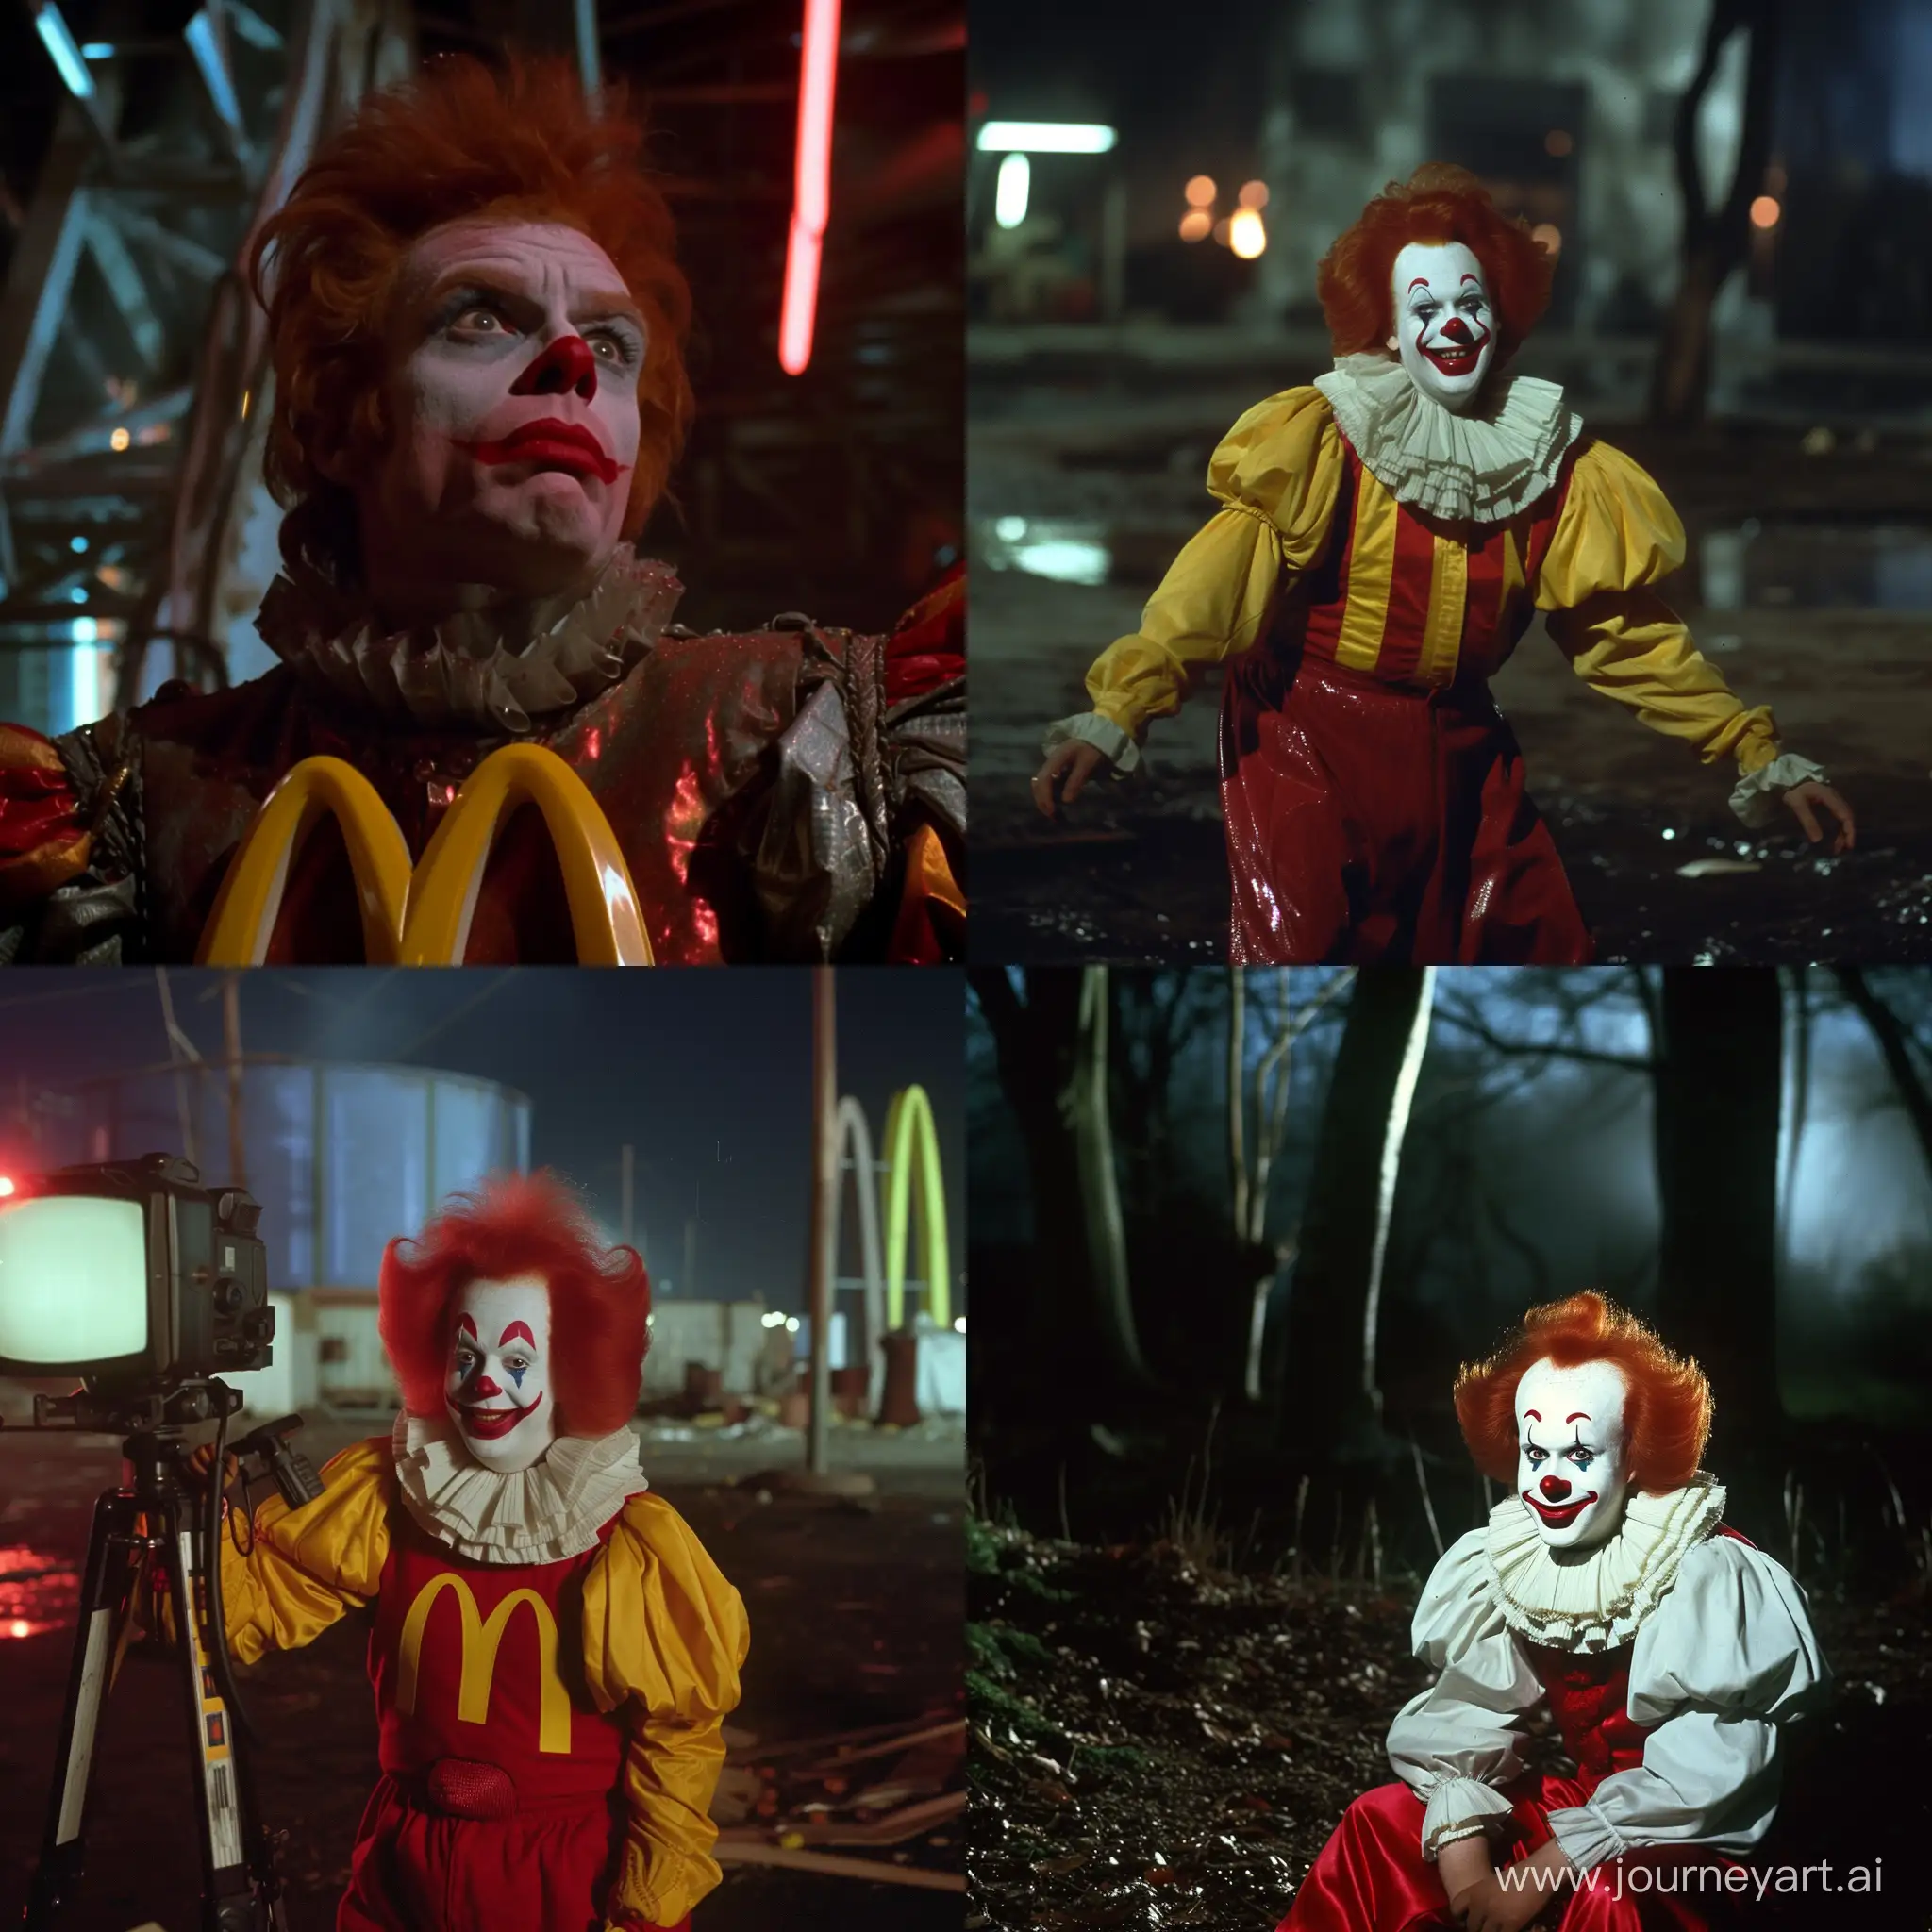 Ronald Mcdonald at 80s trash movies, screenshot from 1980s dark fantasy films 